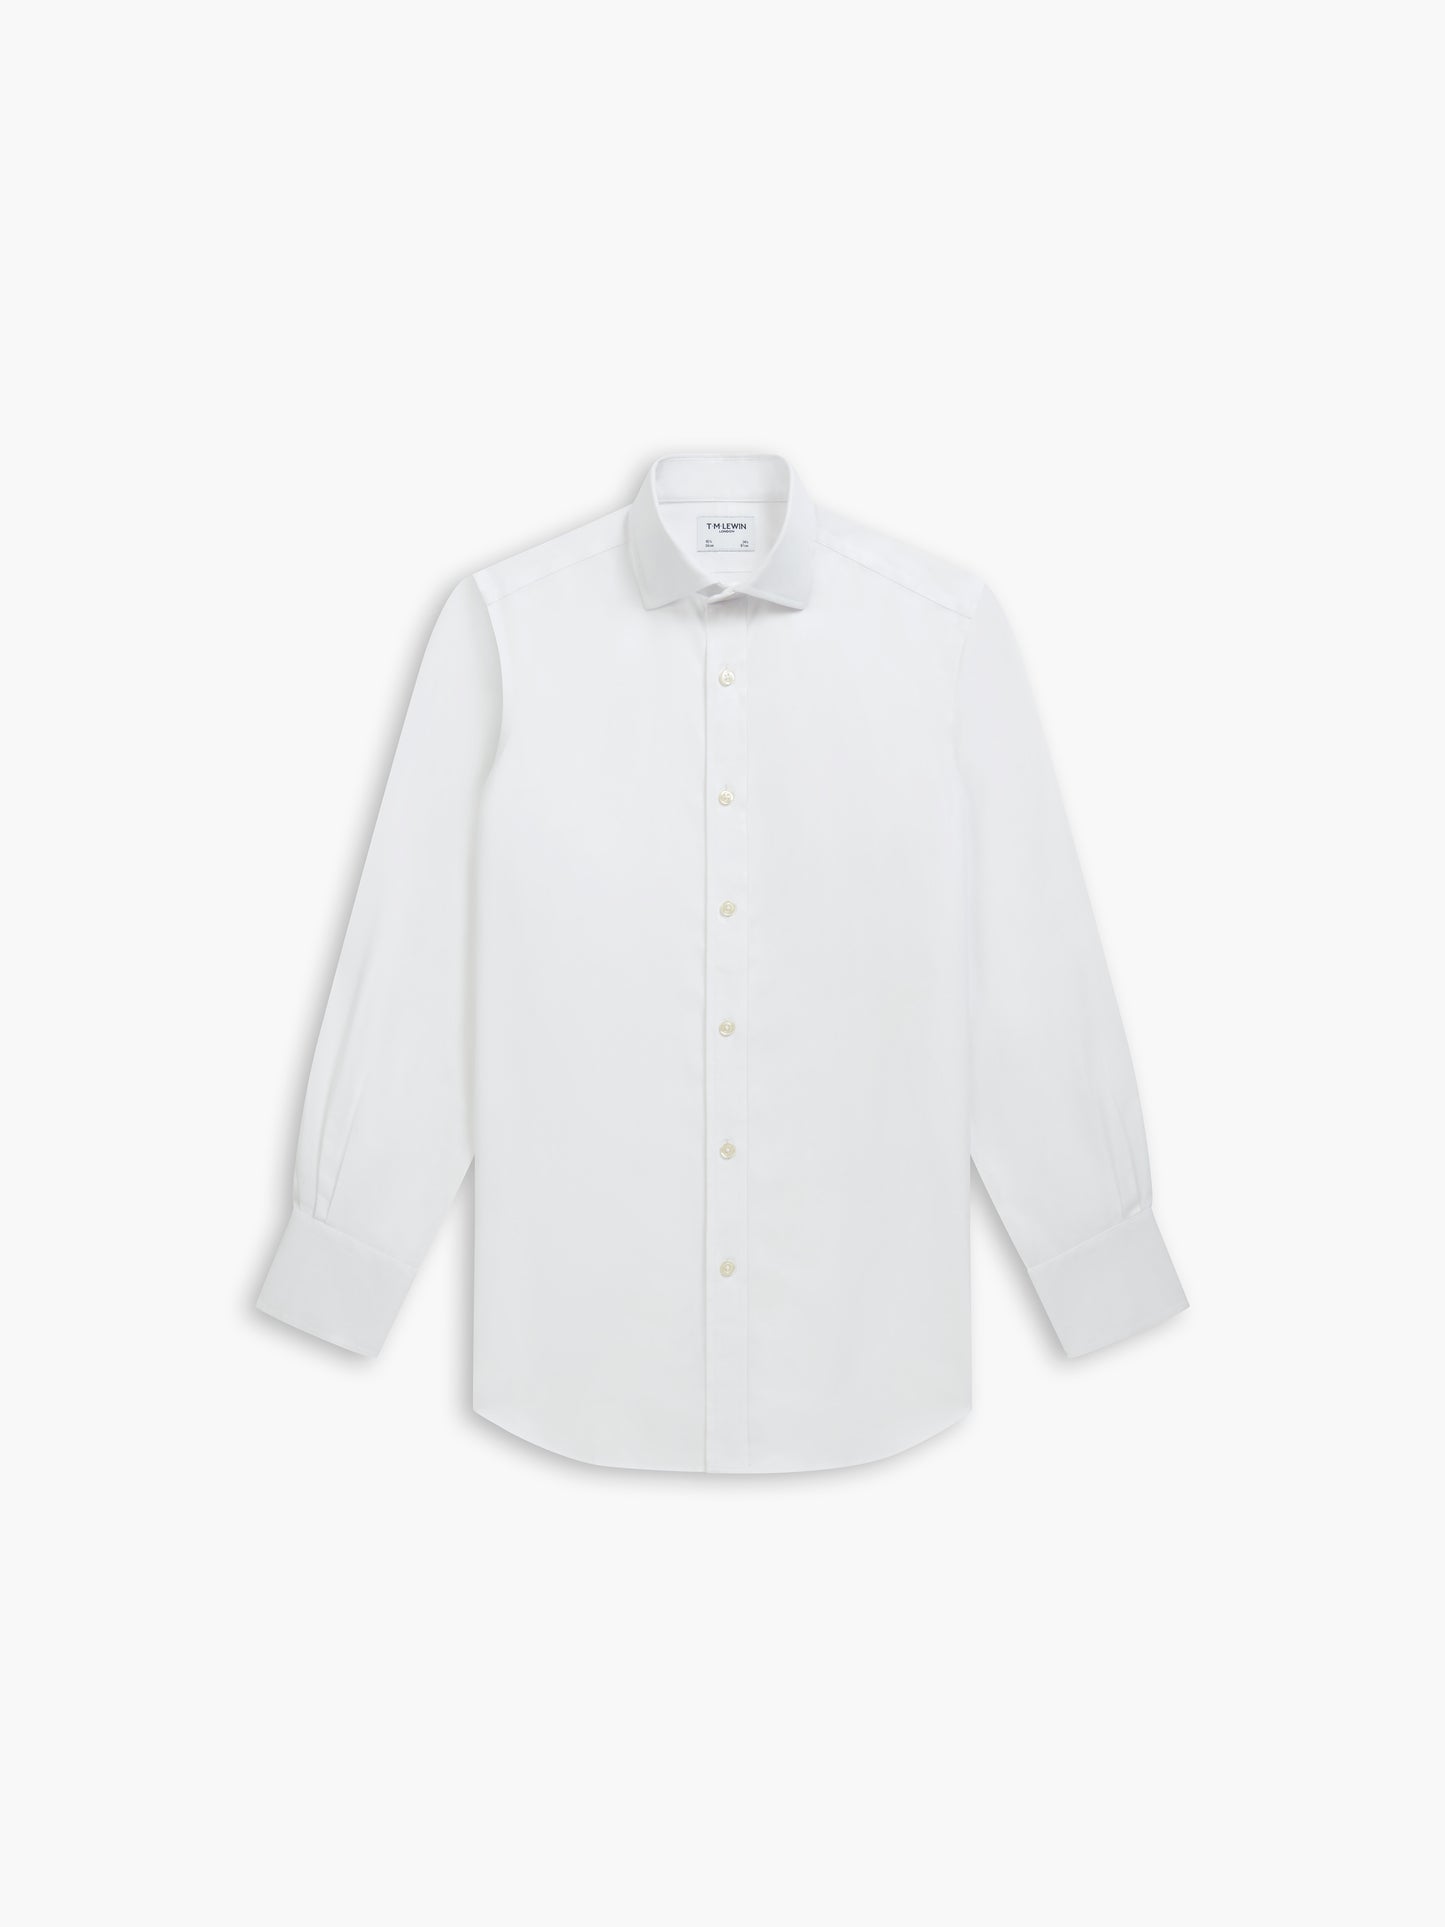 Non-Iron White Twill Super Fitted Single Cuff Classic Collar Shirt